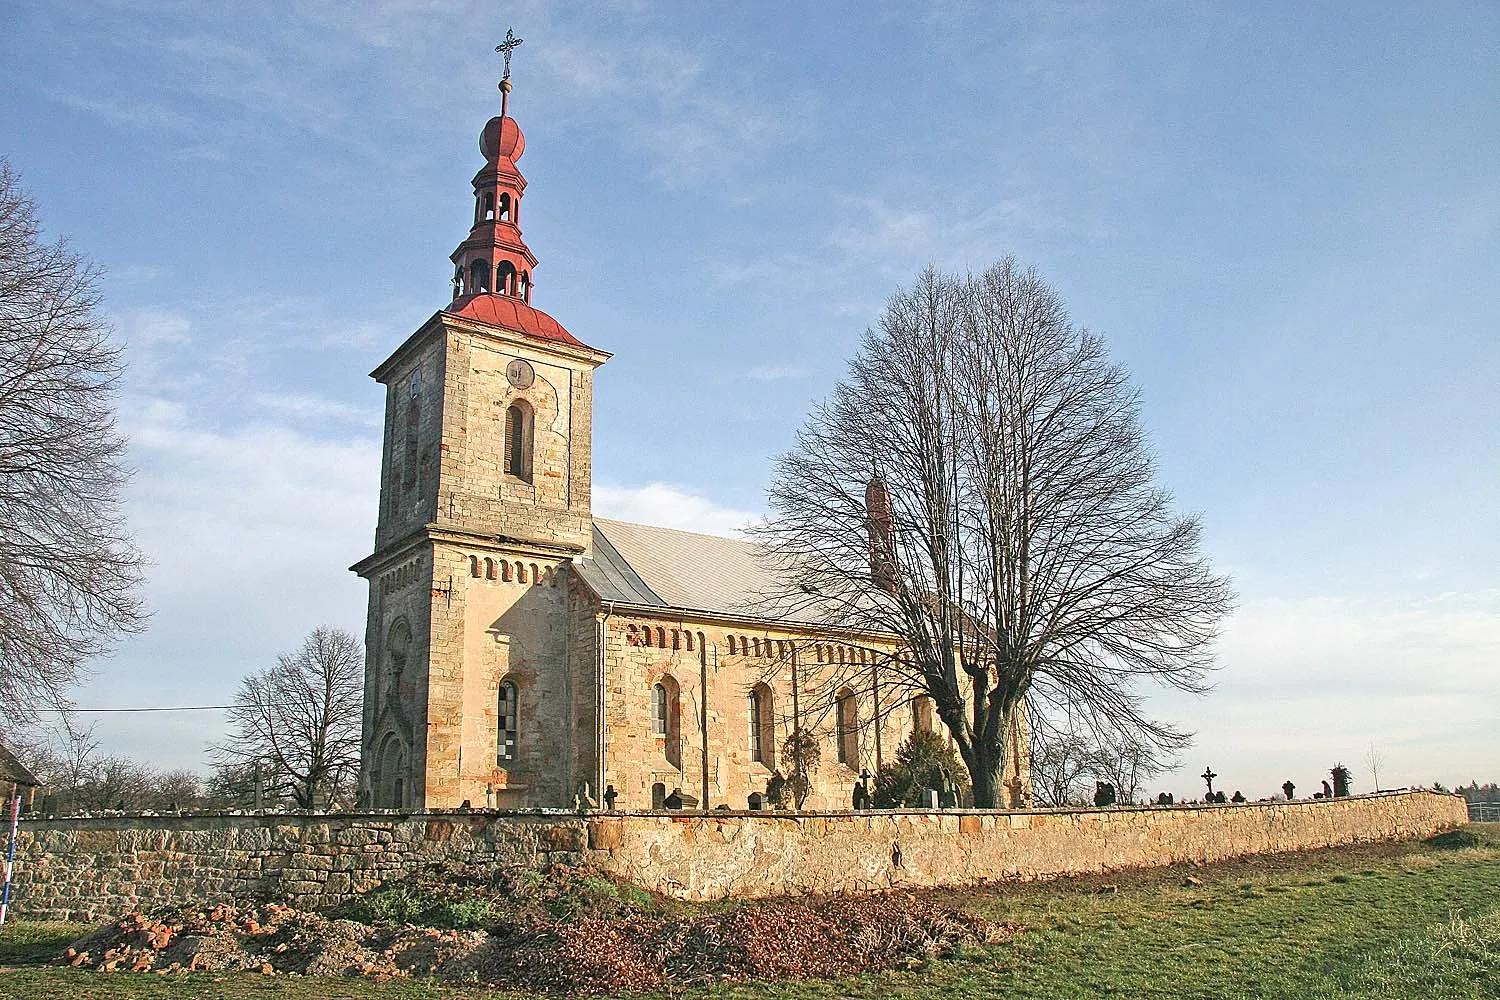 Photo showing: kostel Nejsvětější trojice v Litíči, district Trutnov
autor: Prazak

date: 2. 1. 2007